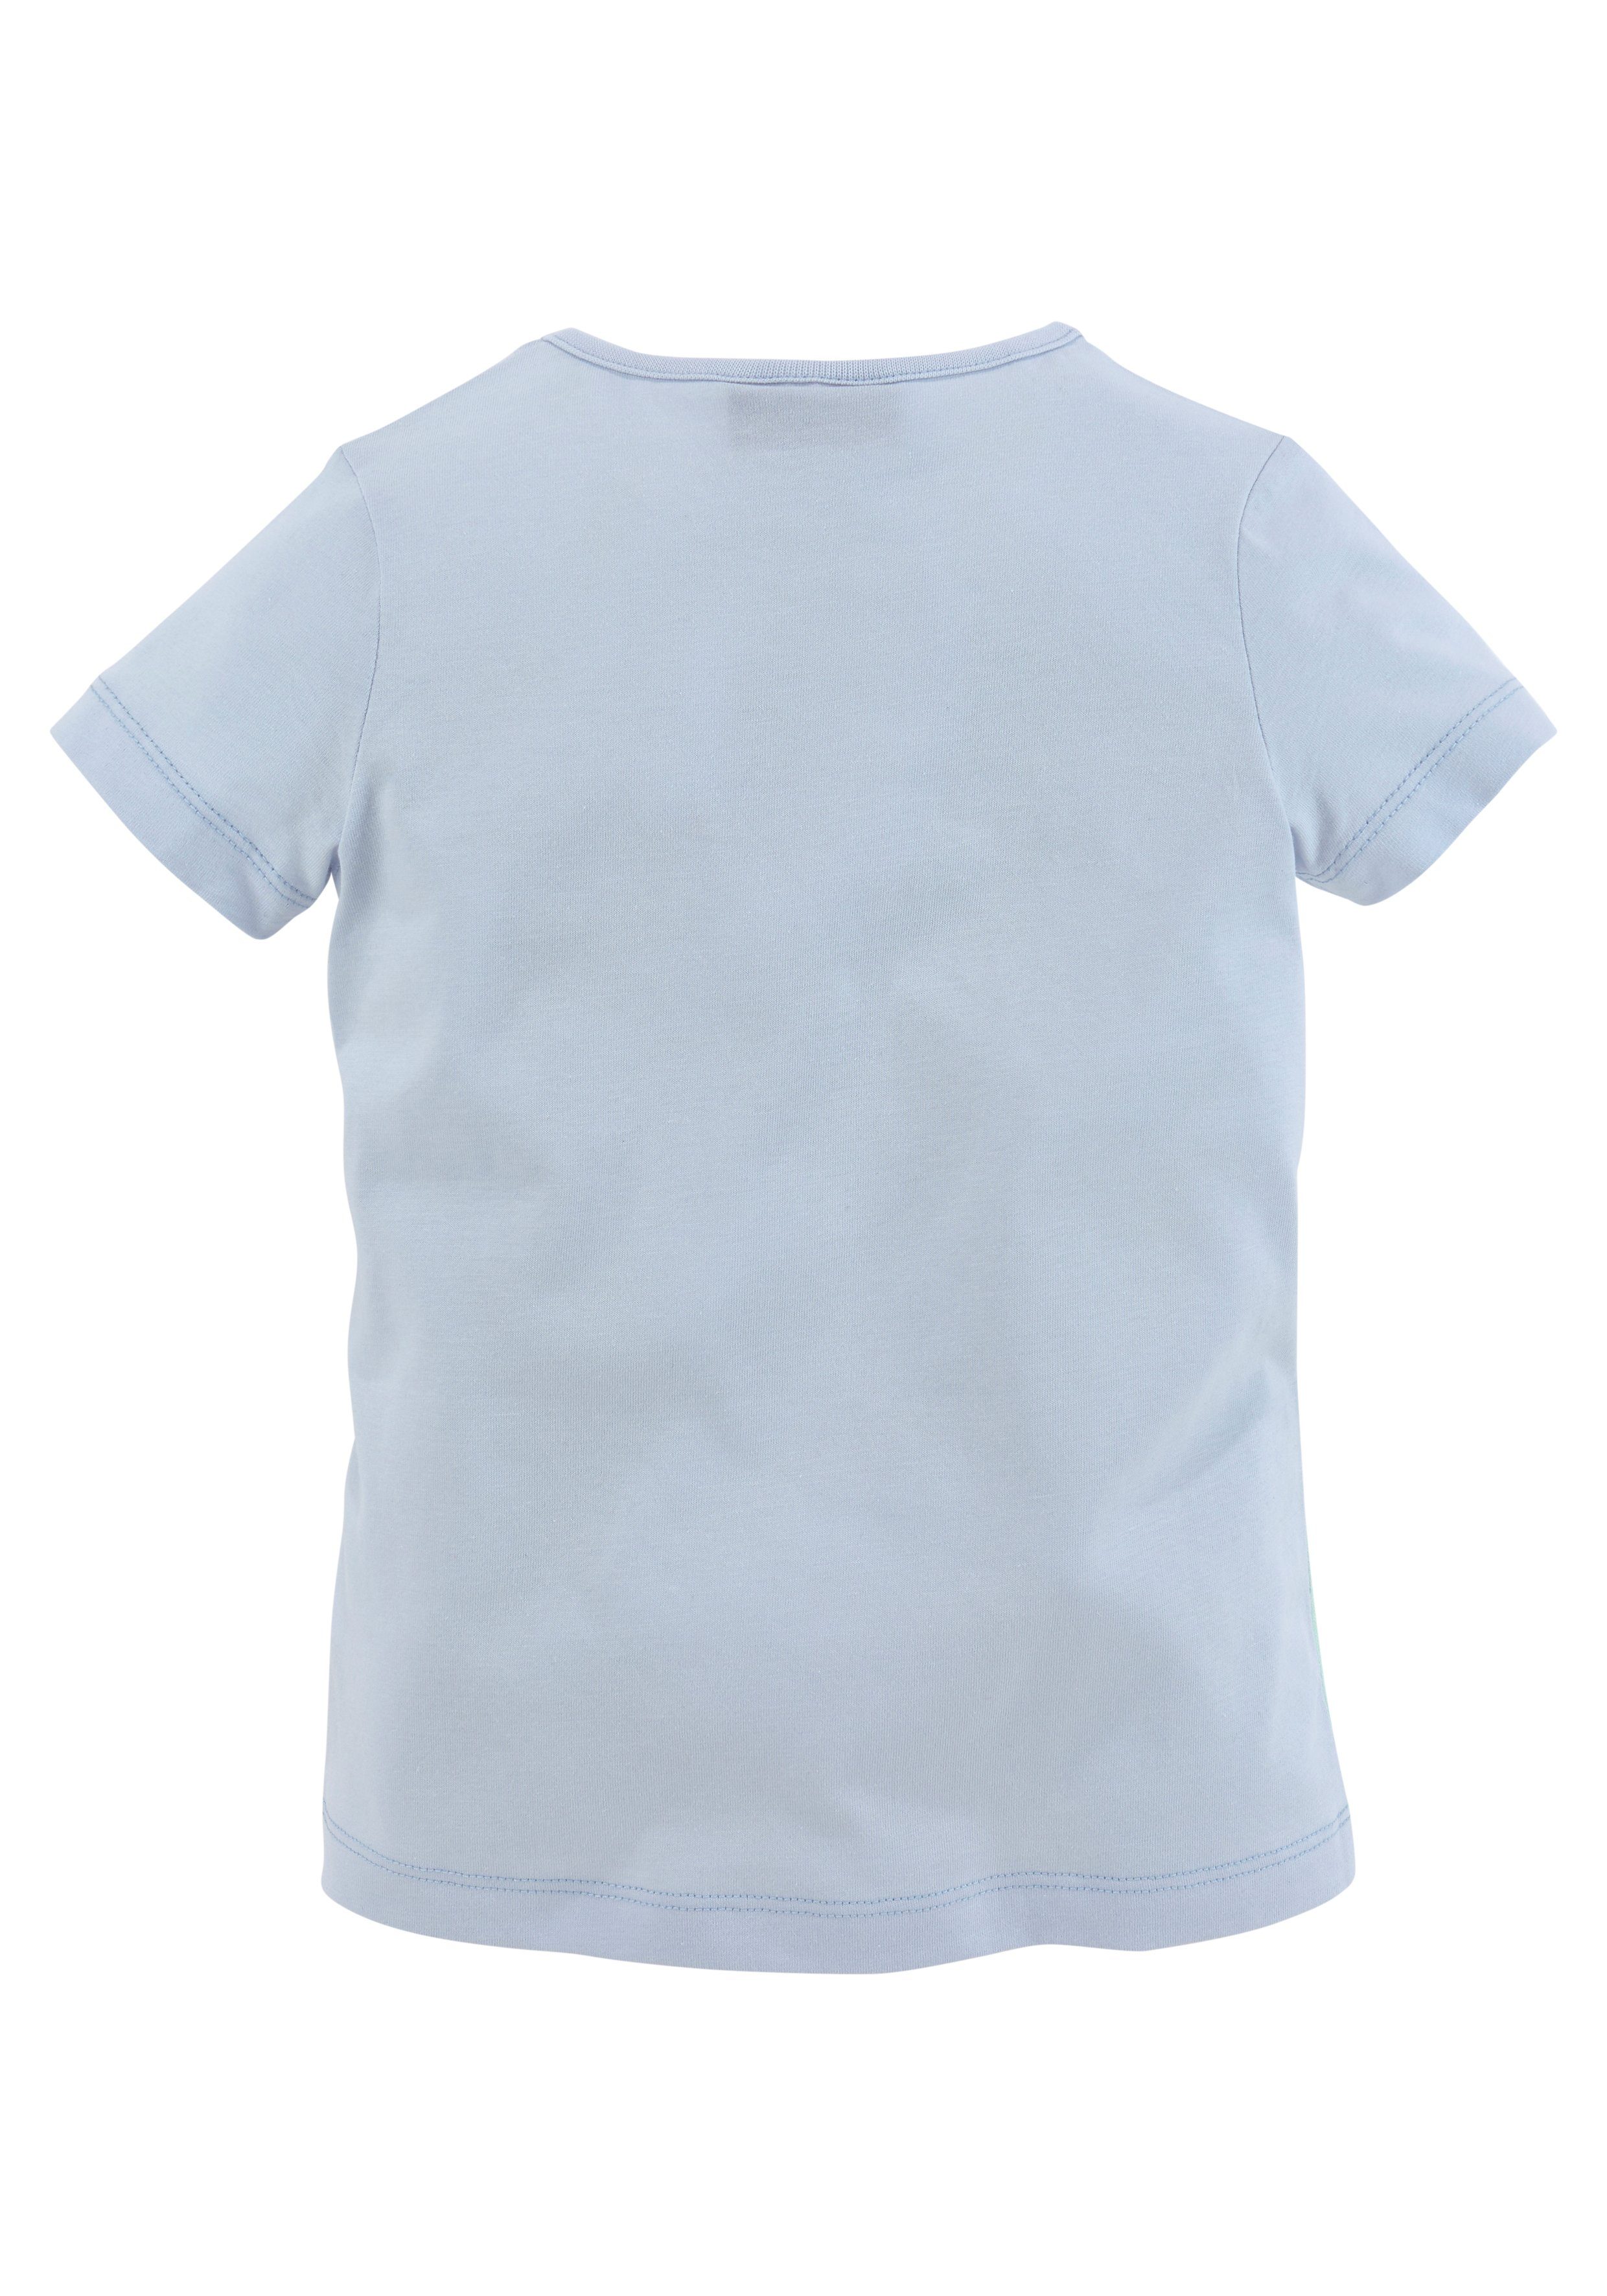 Pferdemotiv Melody T-Shirt hellblau Miss mit schönem